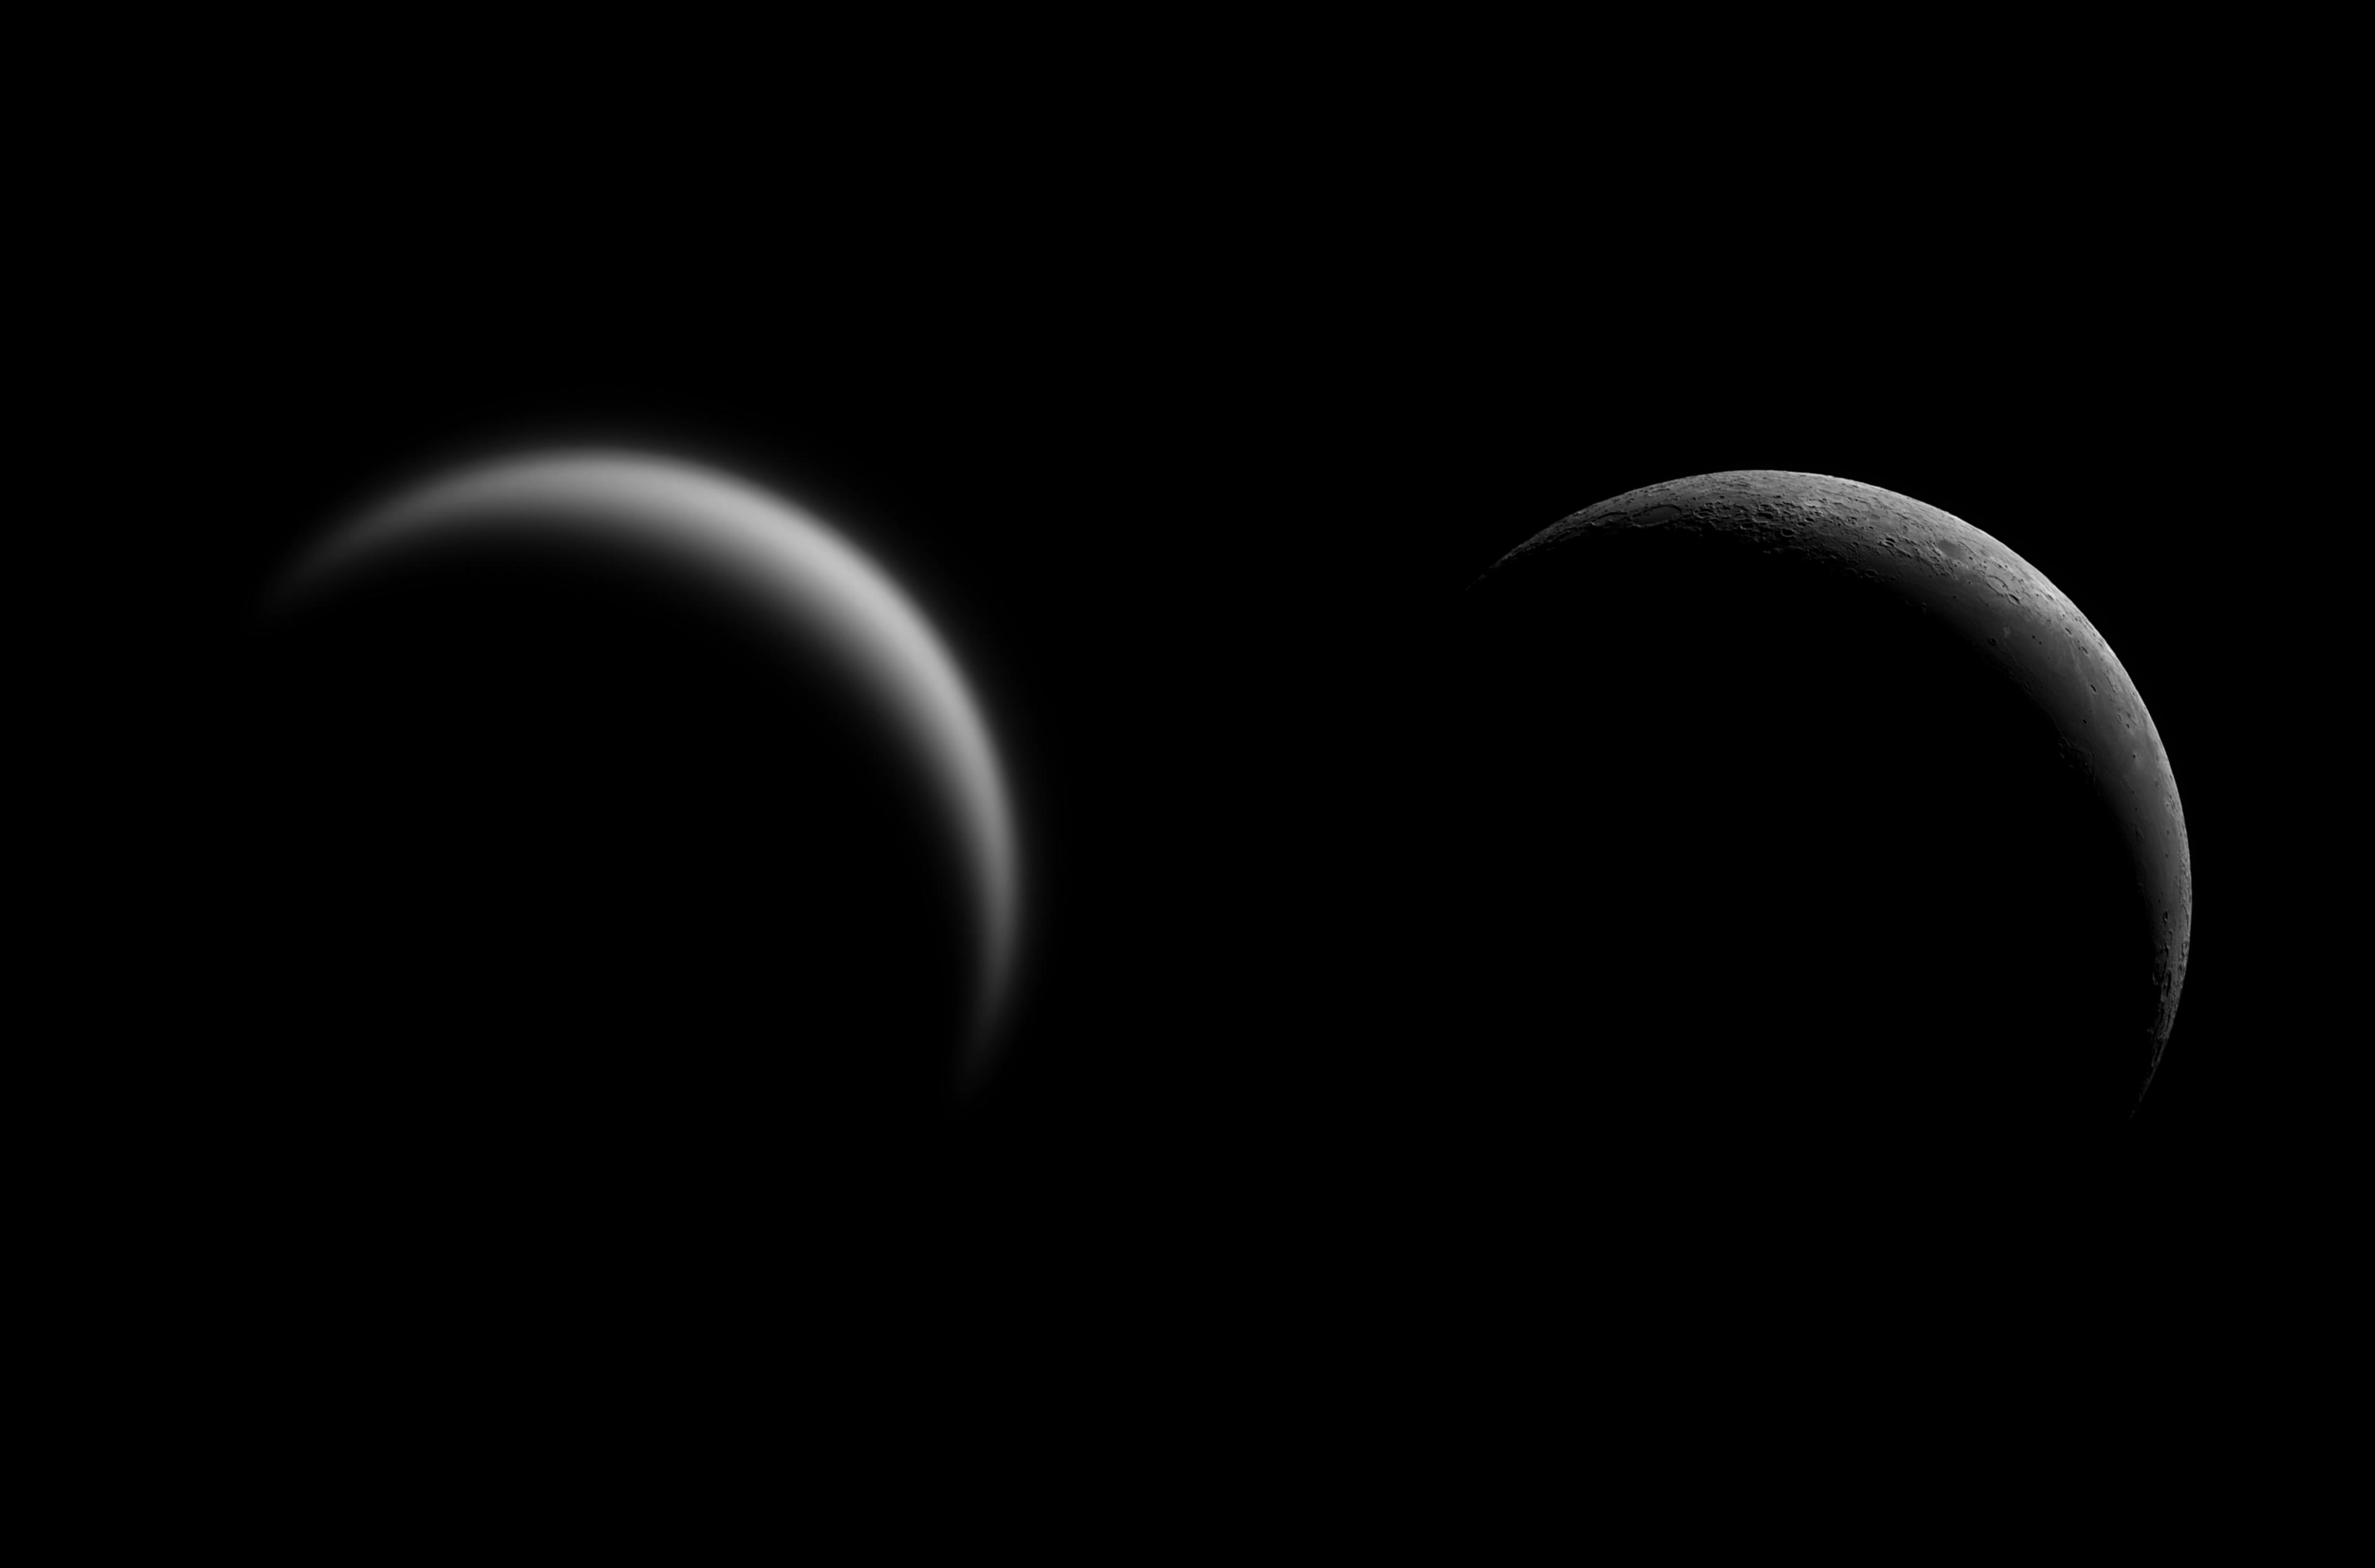 هلالان يظهران بنفس الحجم الأيمن للقمر بتفاصيل واضحة نسبيّاً أما الأيسر للزهرة ويبدو ضبابيّاً